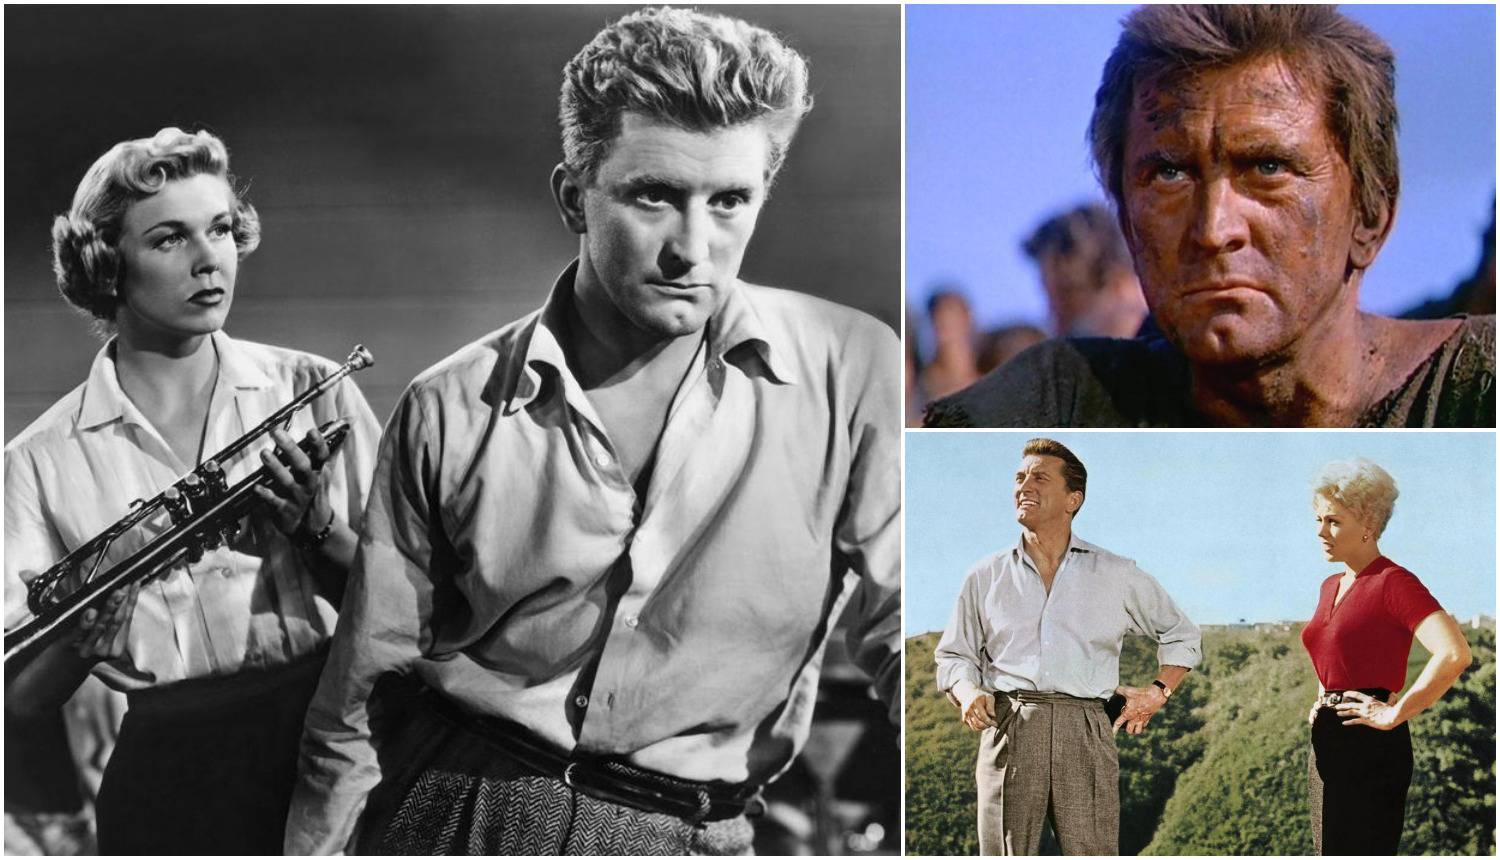 Kirk je bio ikona Hollywooda, karijera mu je trajala 70 godina